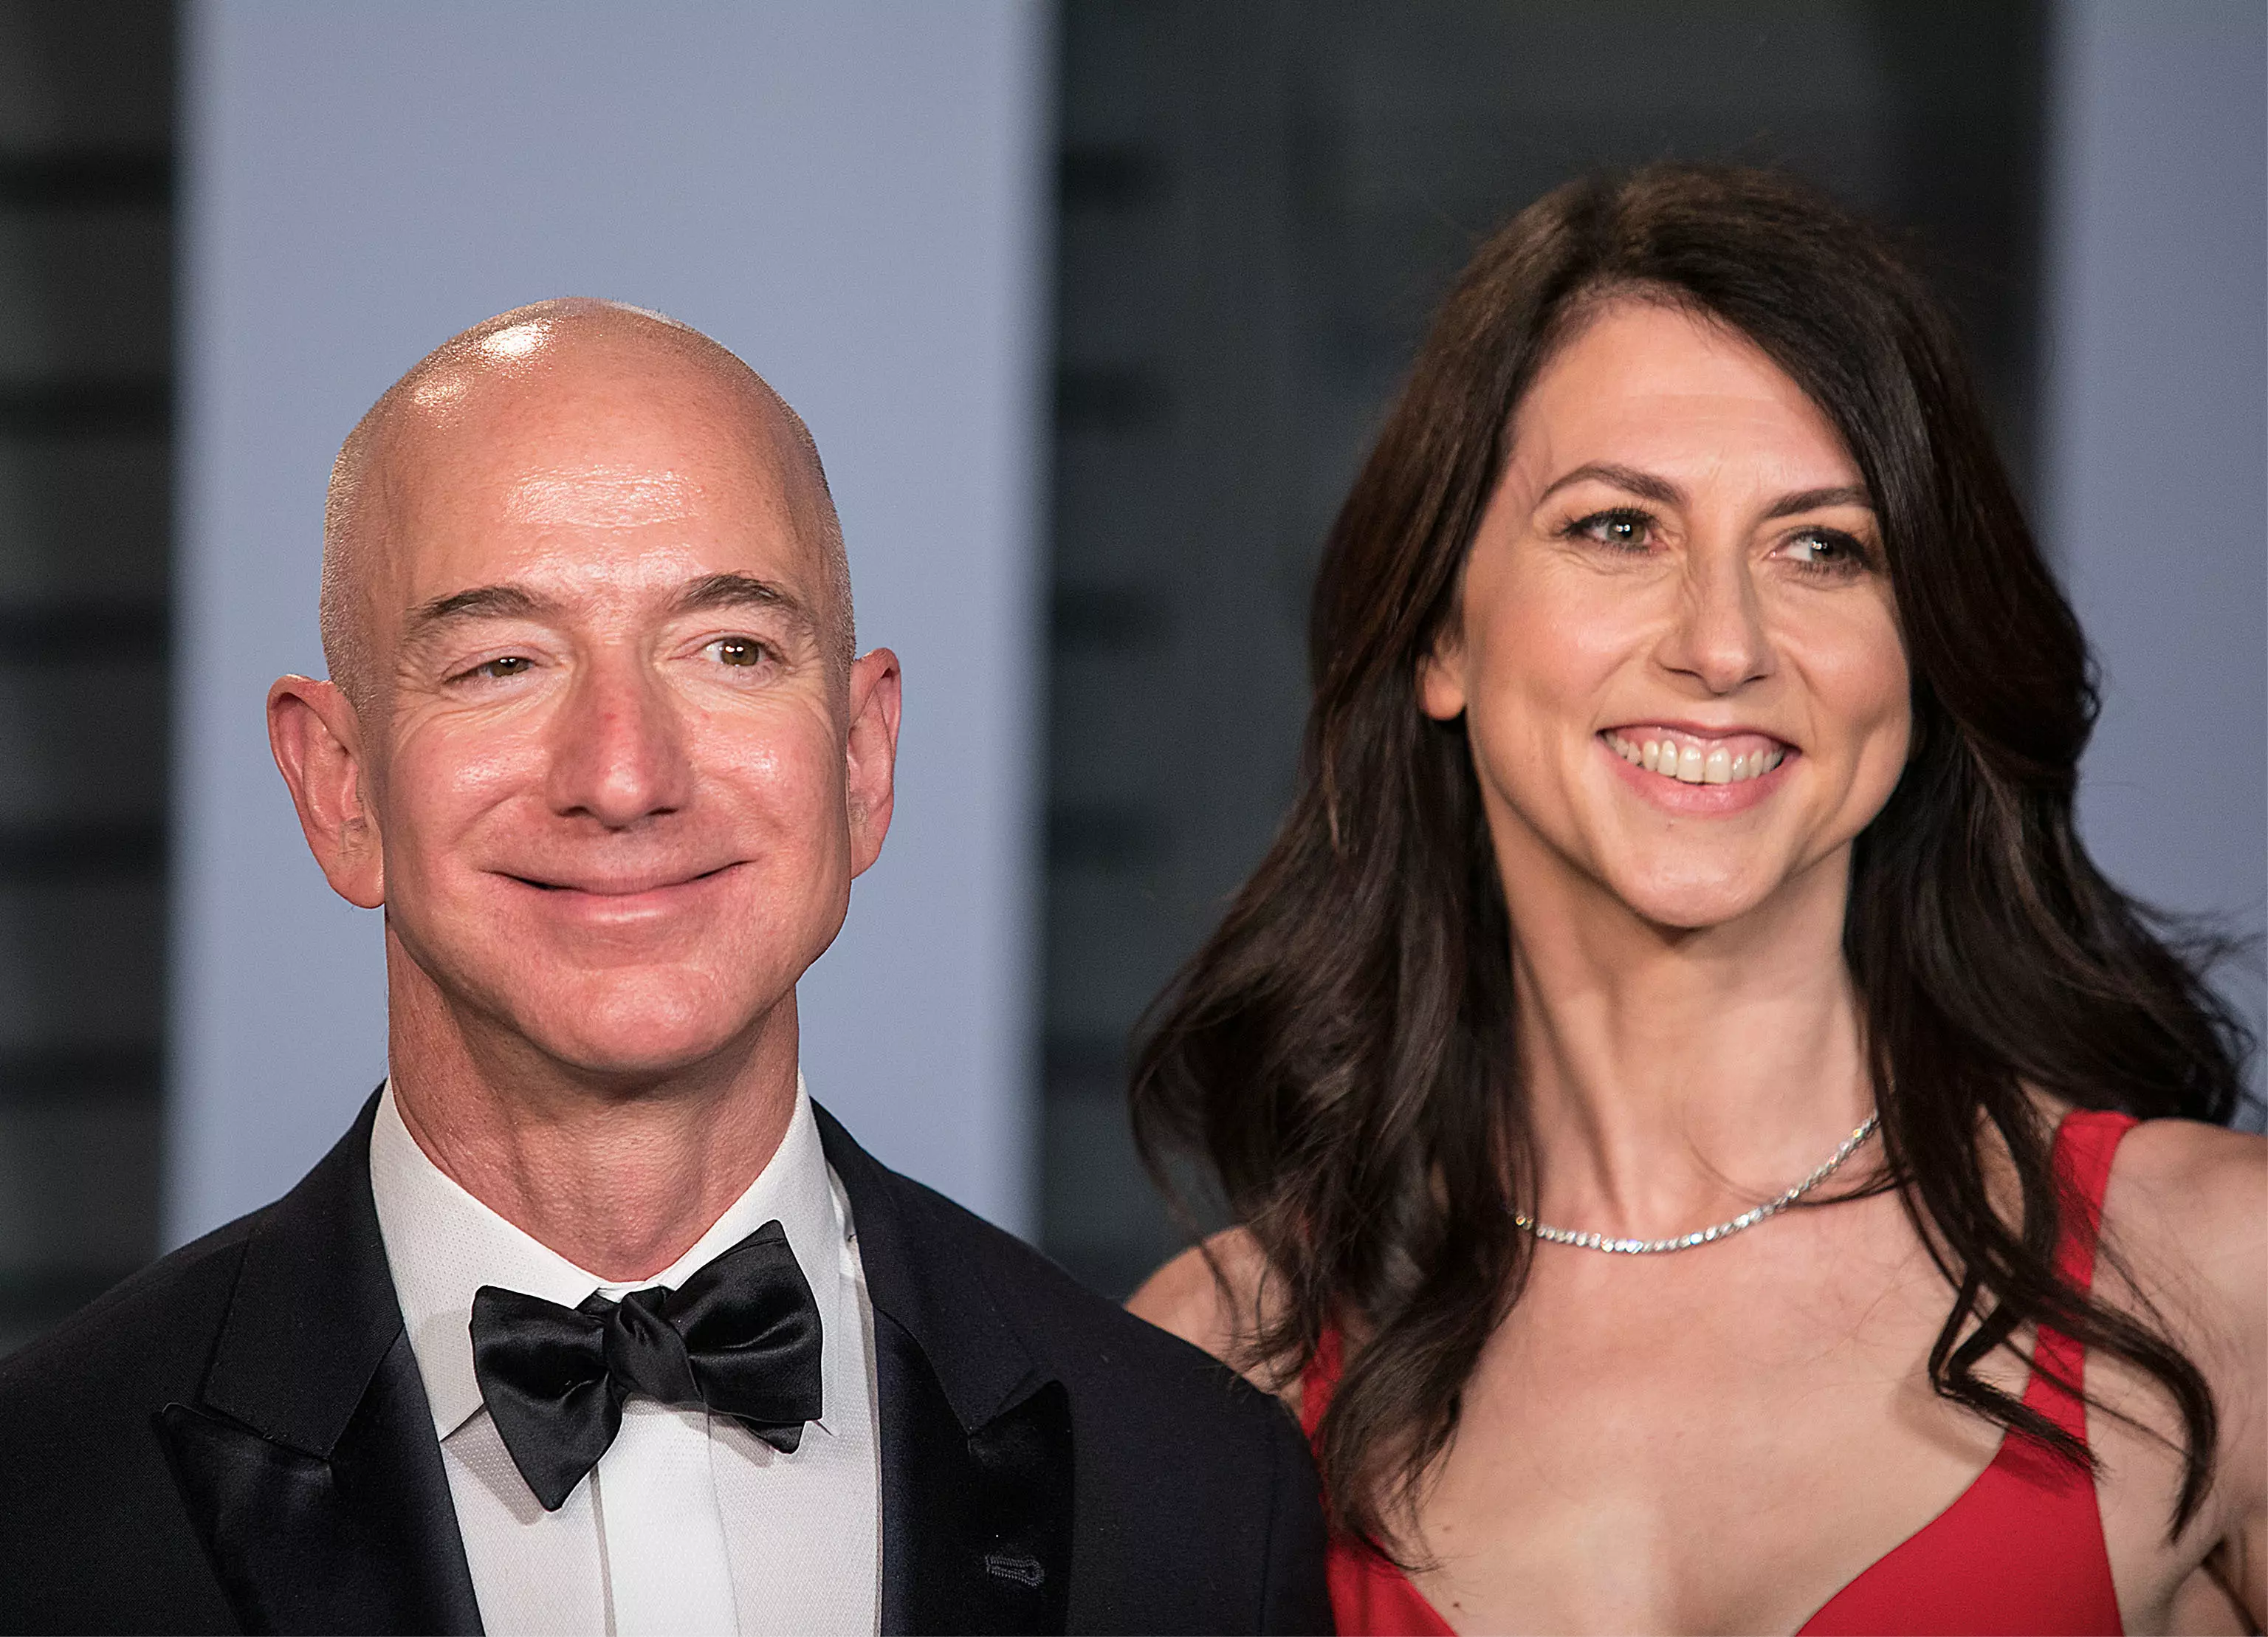 Jeff Bezos recently divorced his wife Mackenzie.